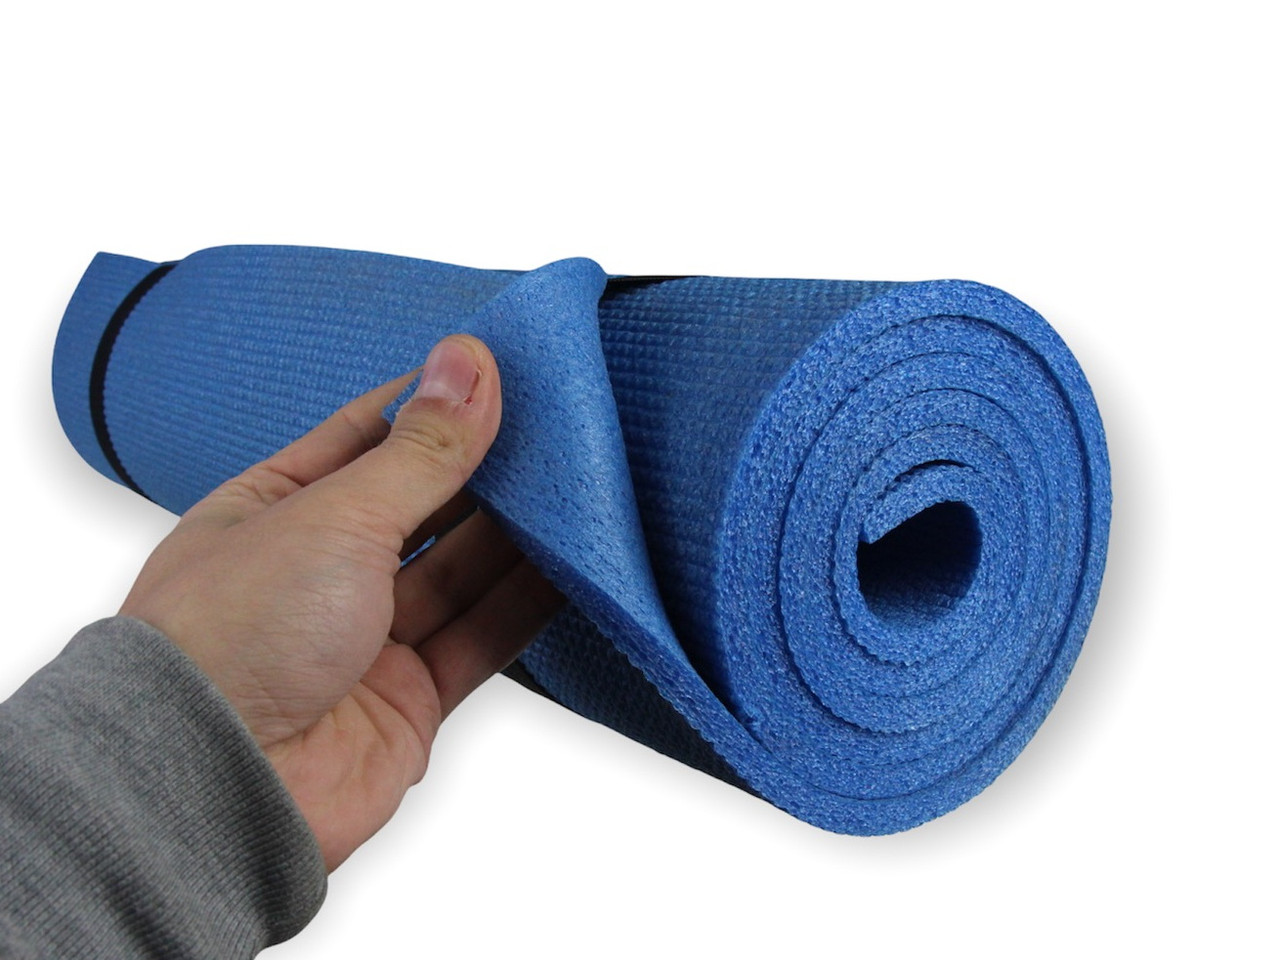 Коврик для фитнеса и йоги AEROBICA 8, синий, толщина 8мм, ширина 120см детальная фотка